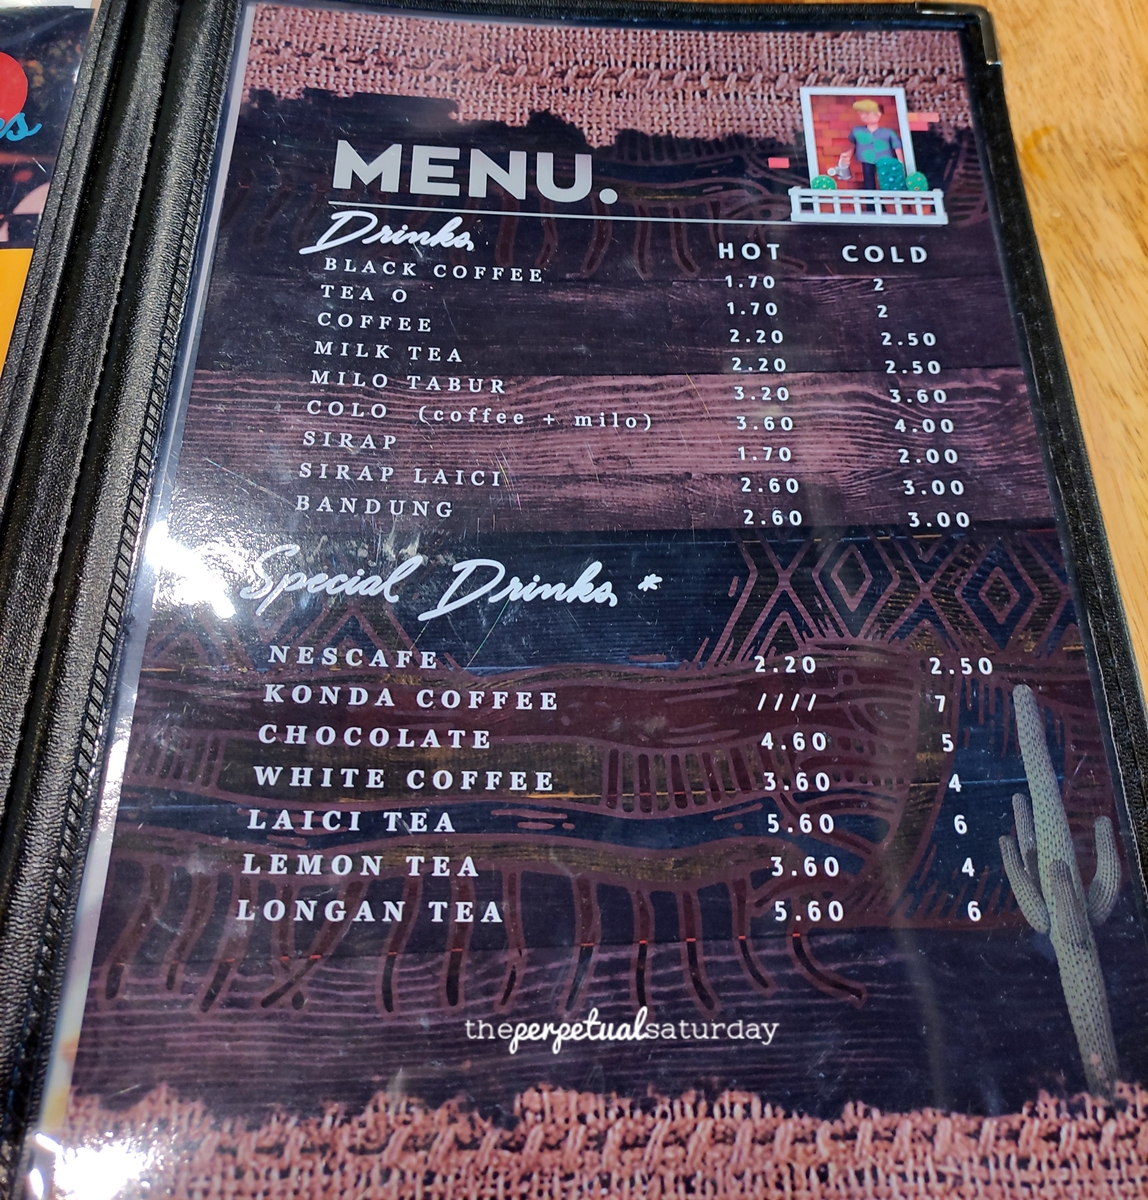 Konda Kondi Cafe menu, Ipoh